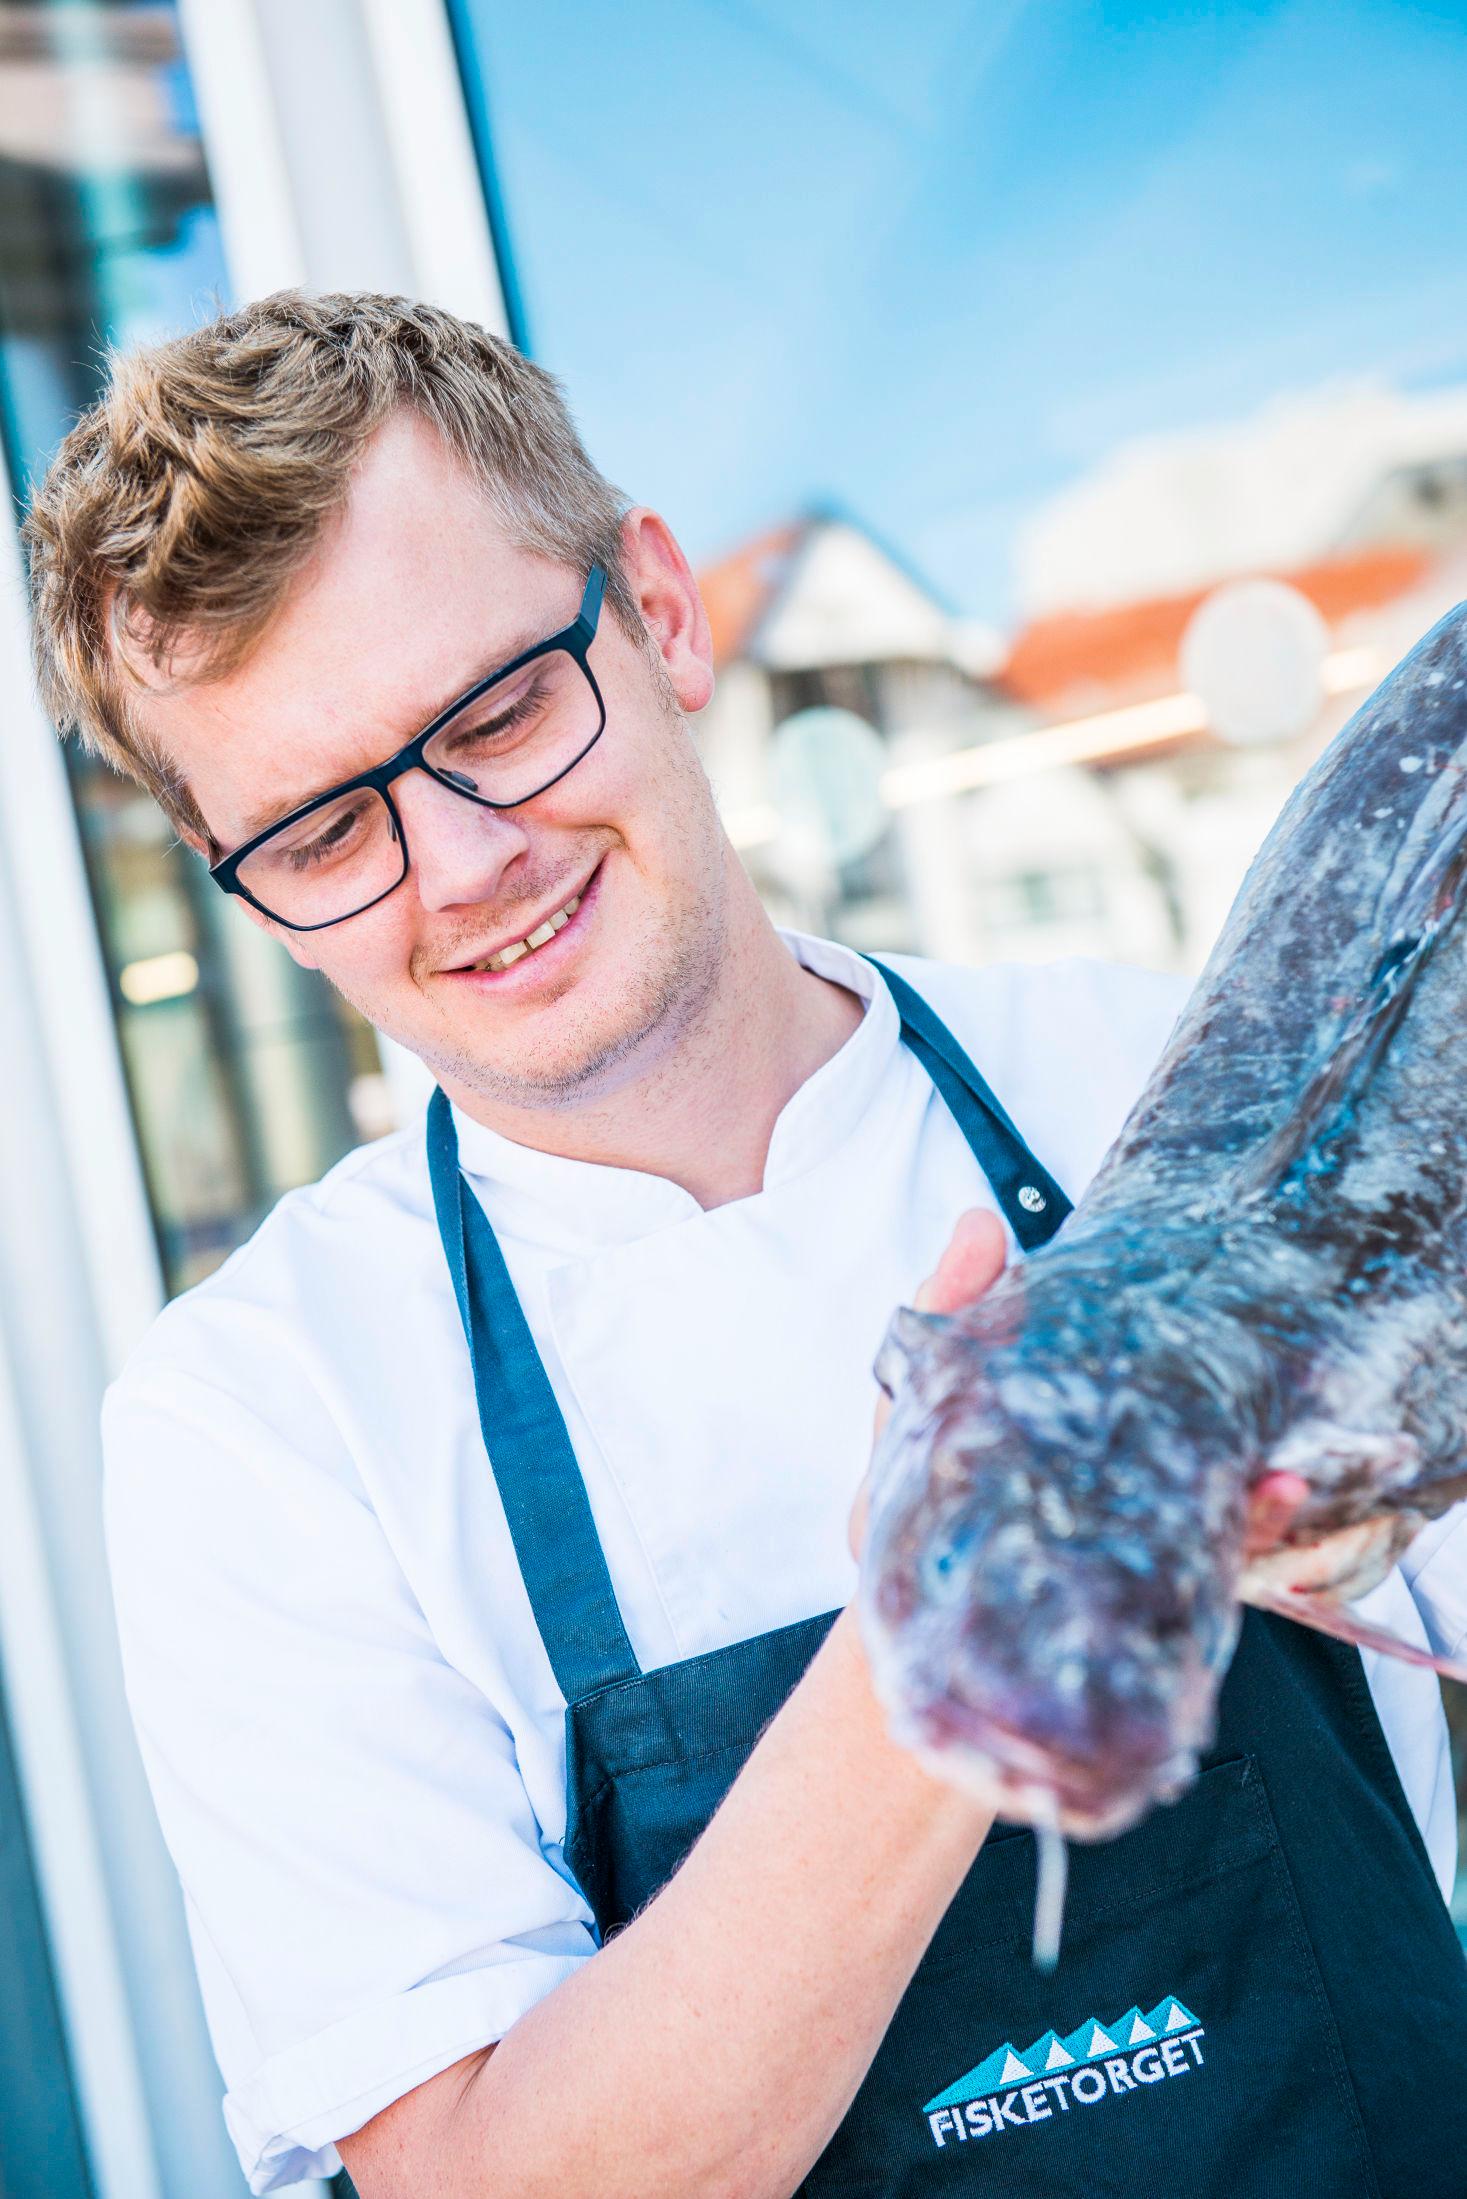 GRILLFAVORITTER: Kokken griller helst kjøtt hjemme, men forteller at sjøkreps og breiflabb er vinnere hos han. Foto: Fredrik Ringe